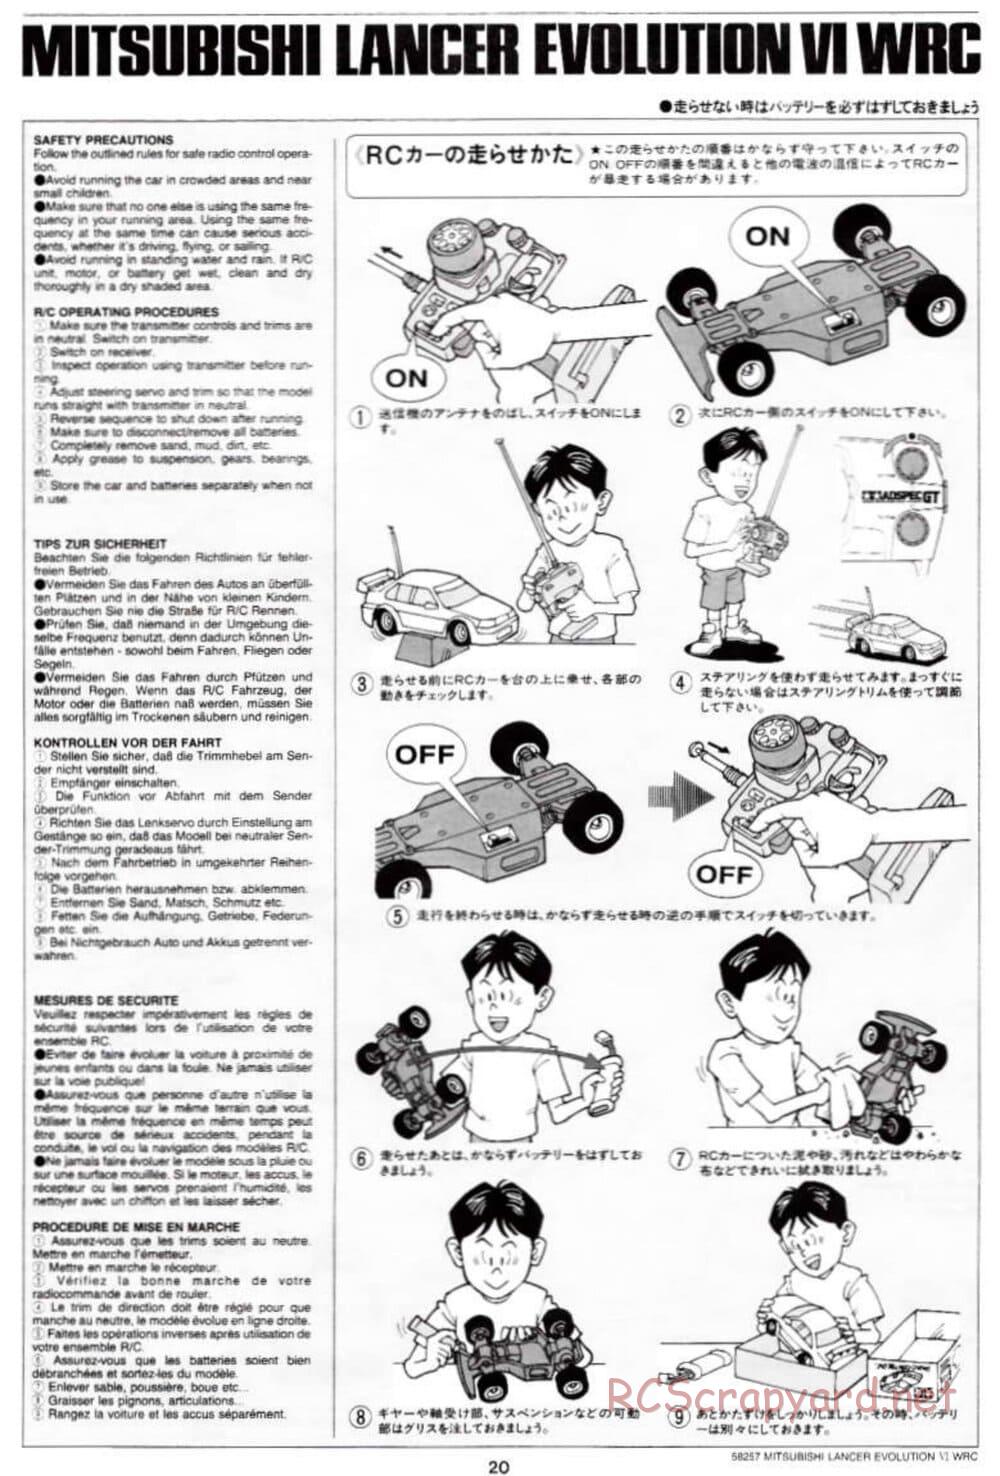 Tamiya - Mitsubishi Lancer Evolution VI WRC - TB-01 Chassis - Manual - Page 20